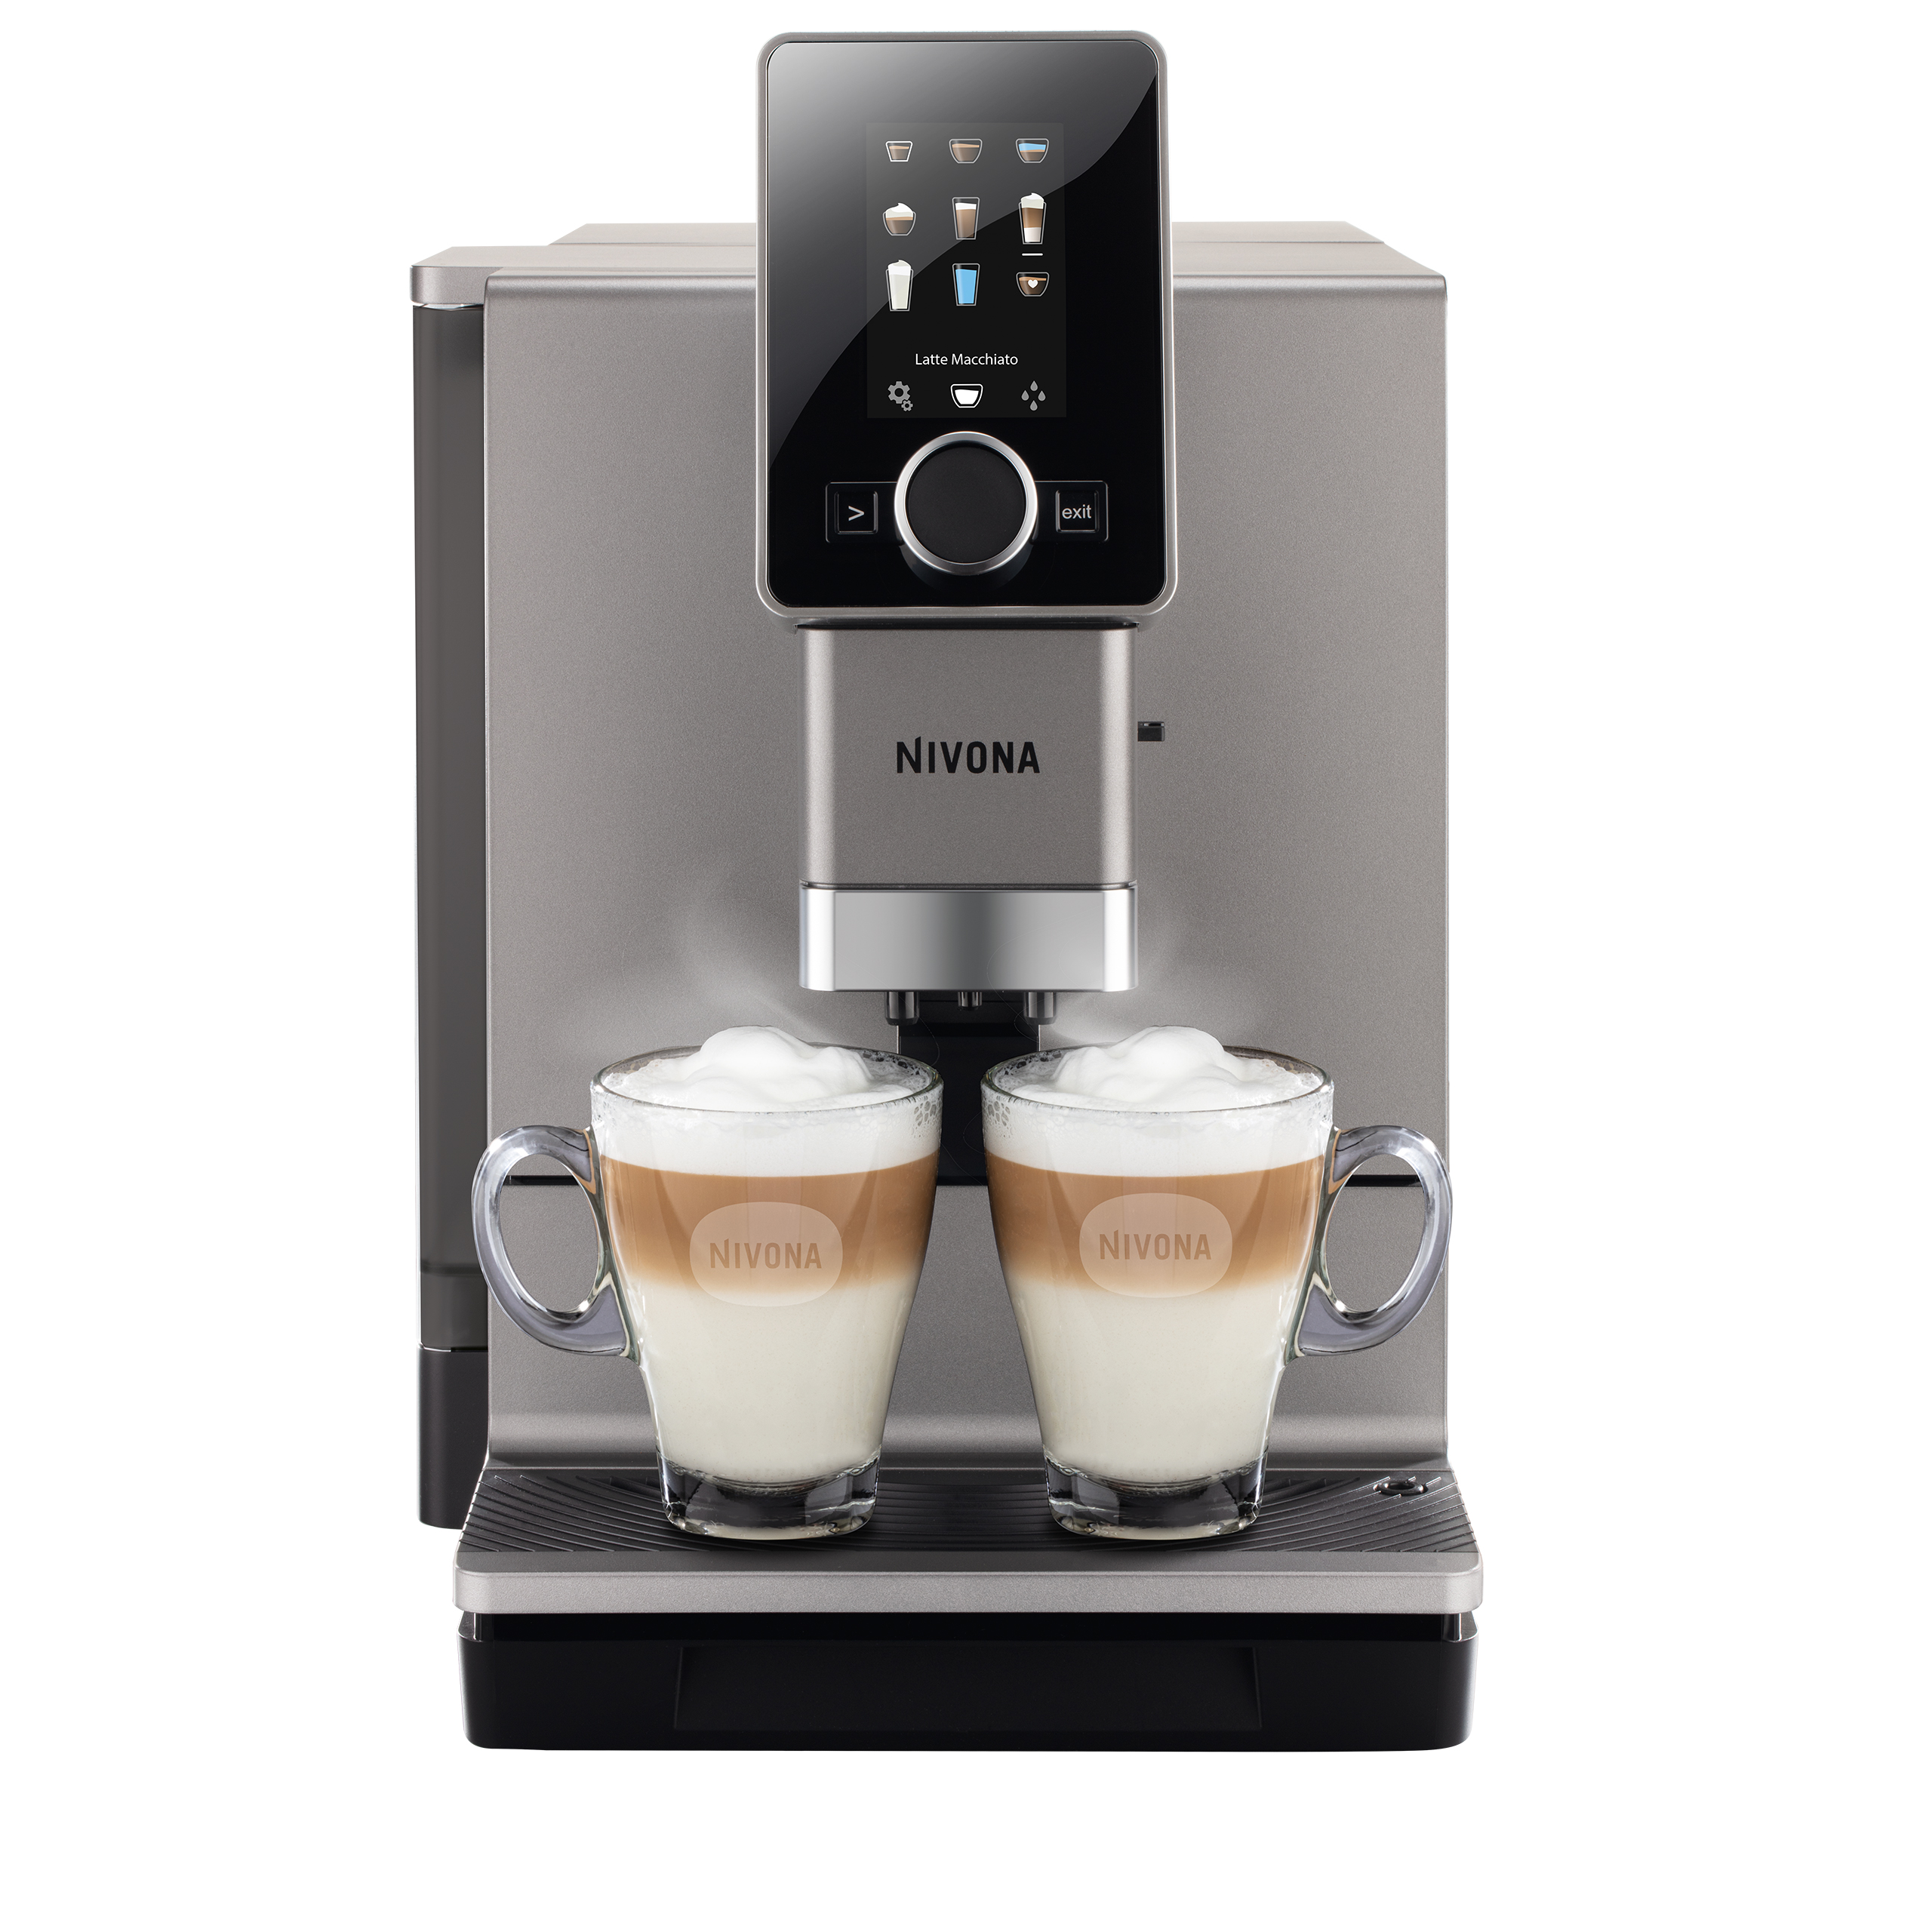 NICR 930 CafeRomatica fully automatic espresso machine